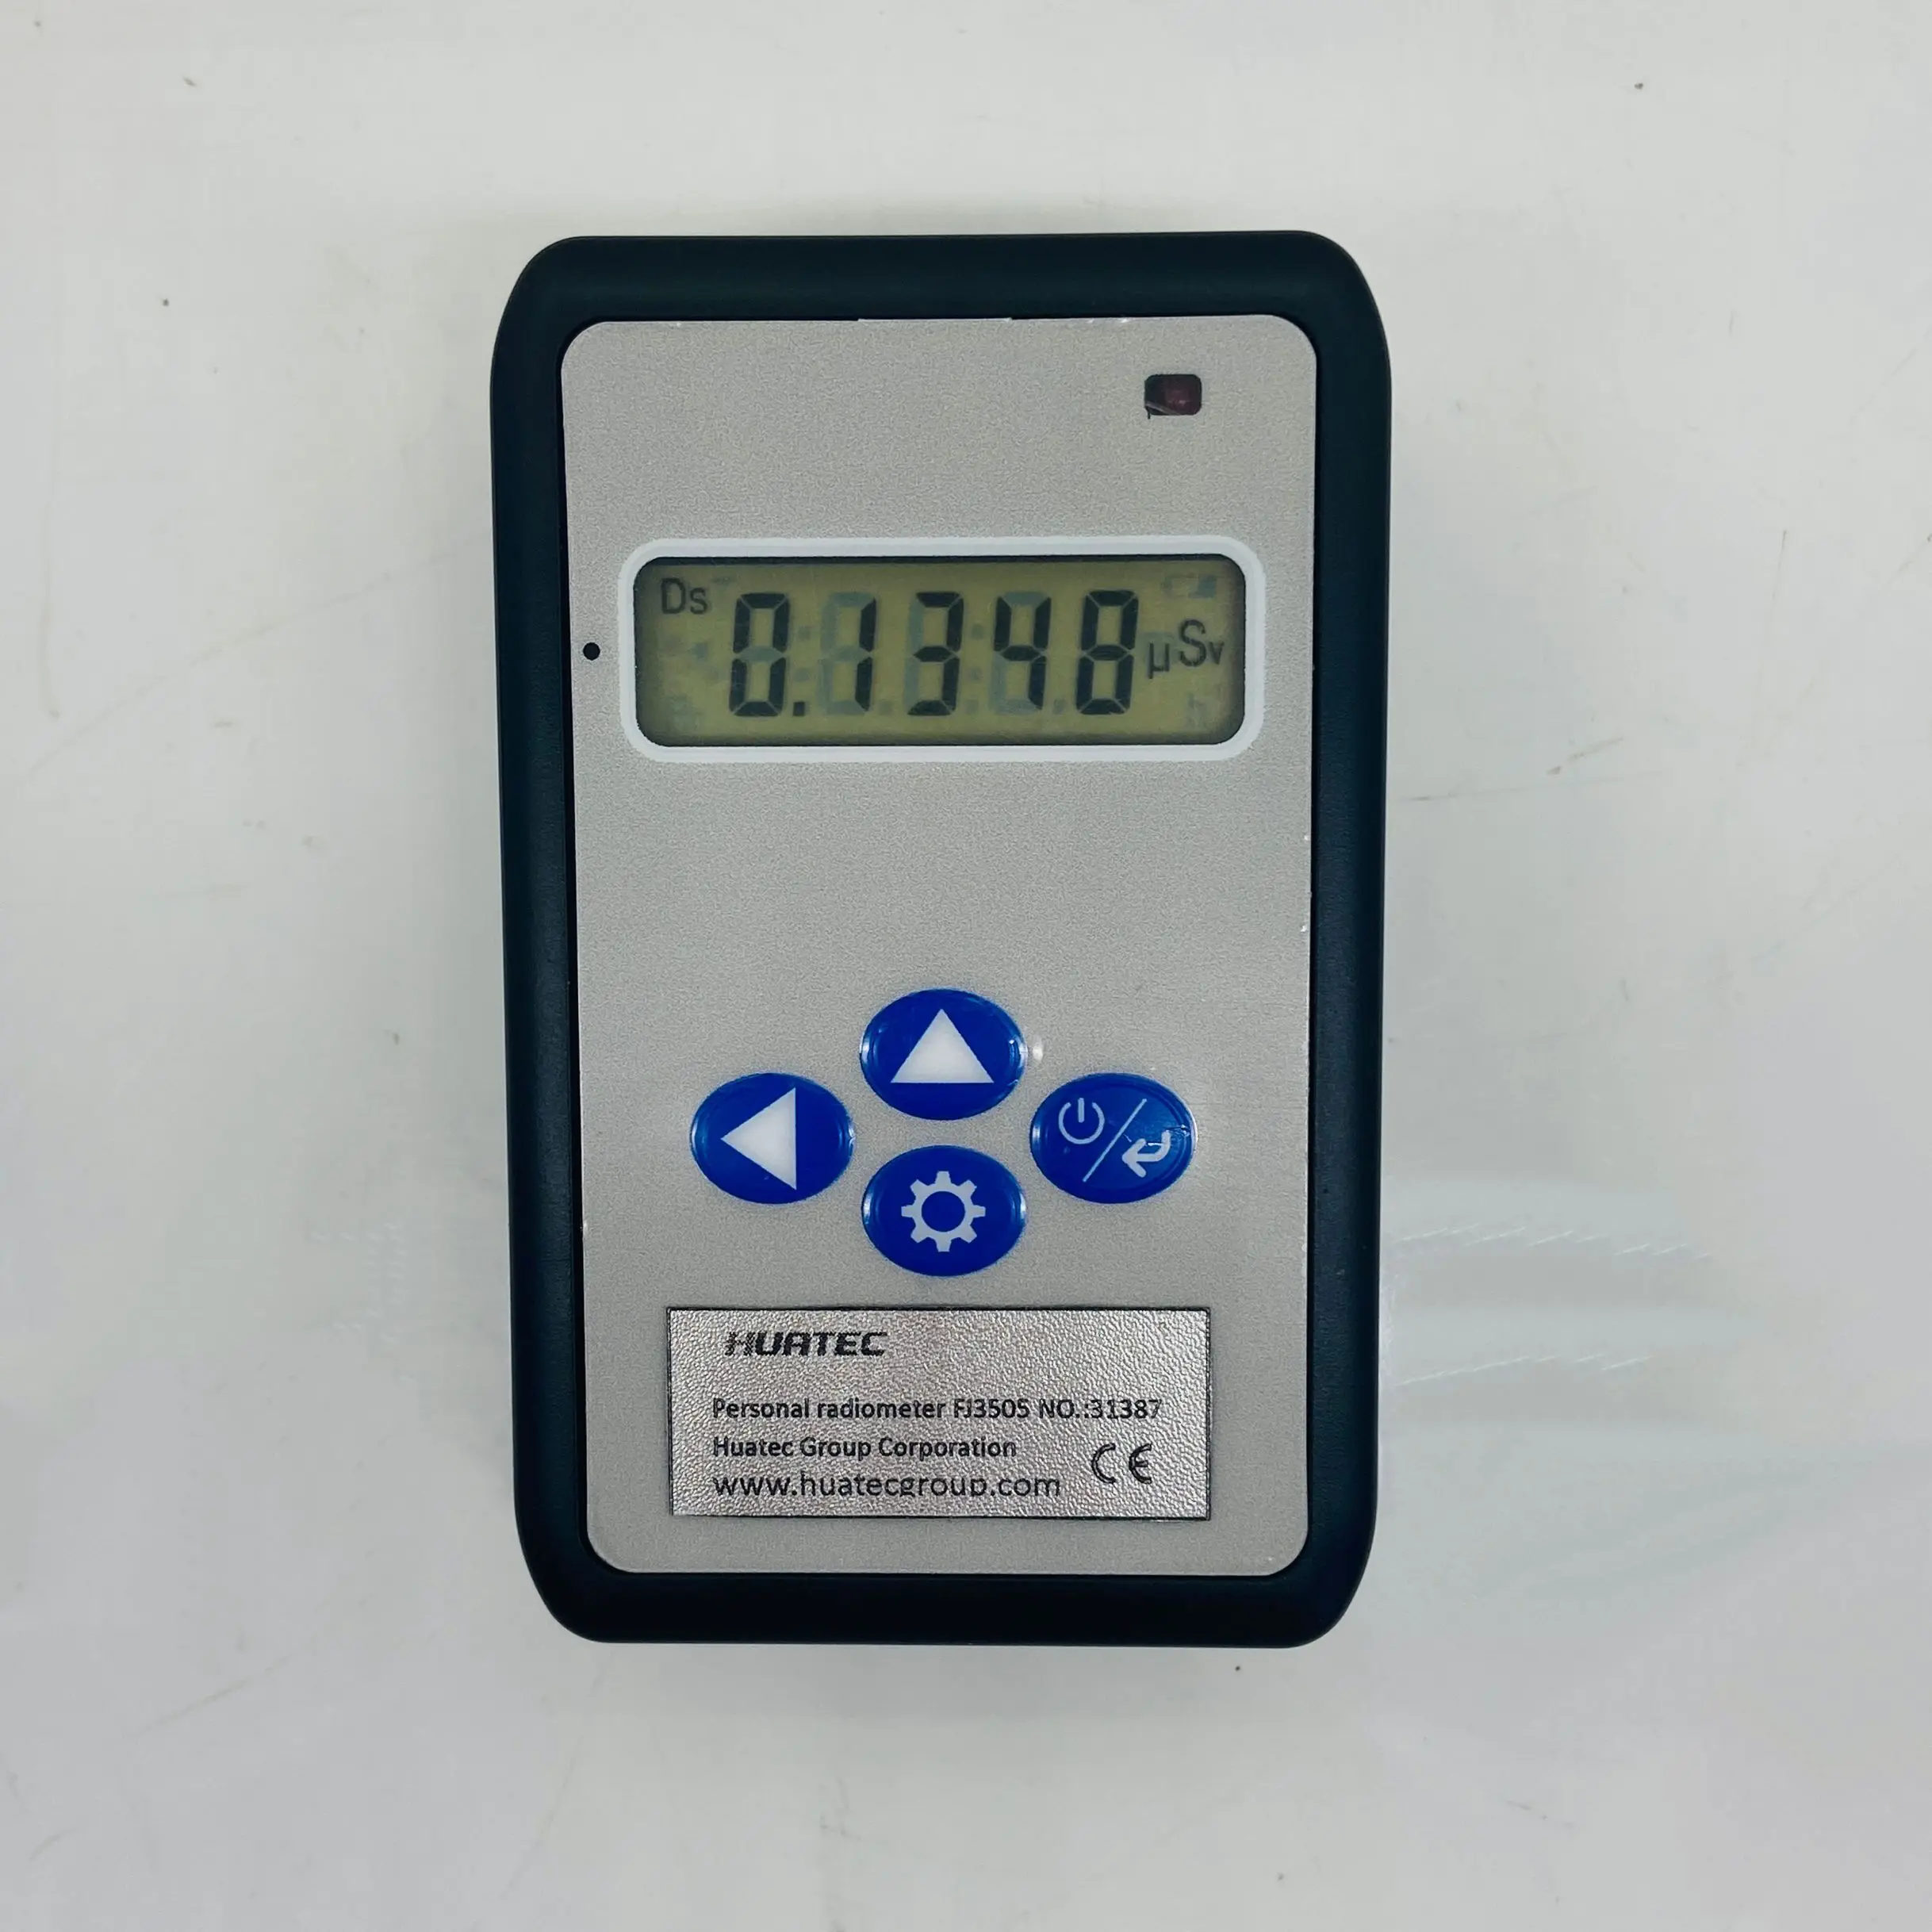 

Многофункциональный измерительный прибор X Y для измерения дозы радиации в реальном времени